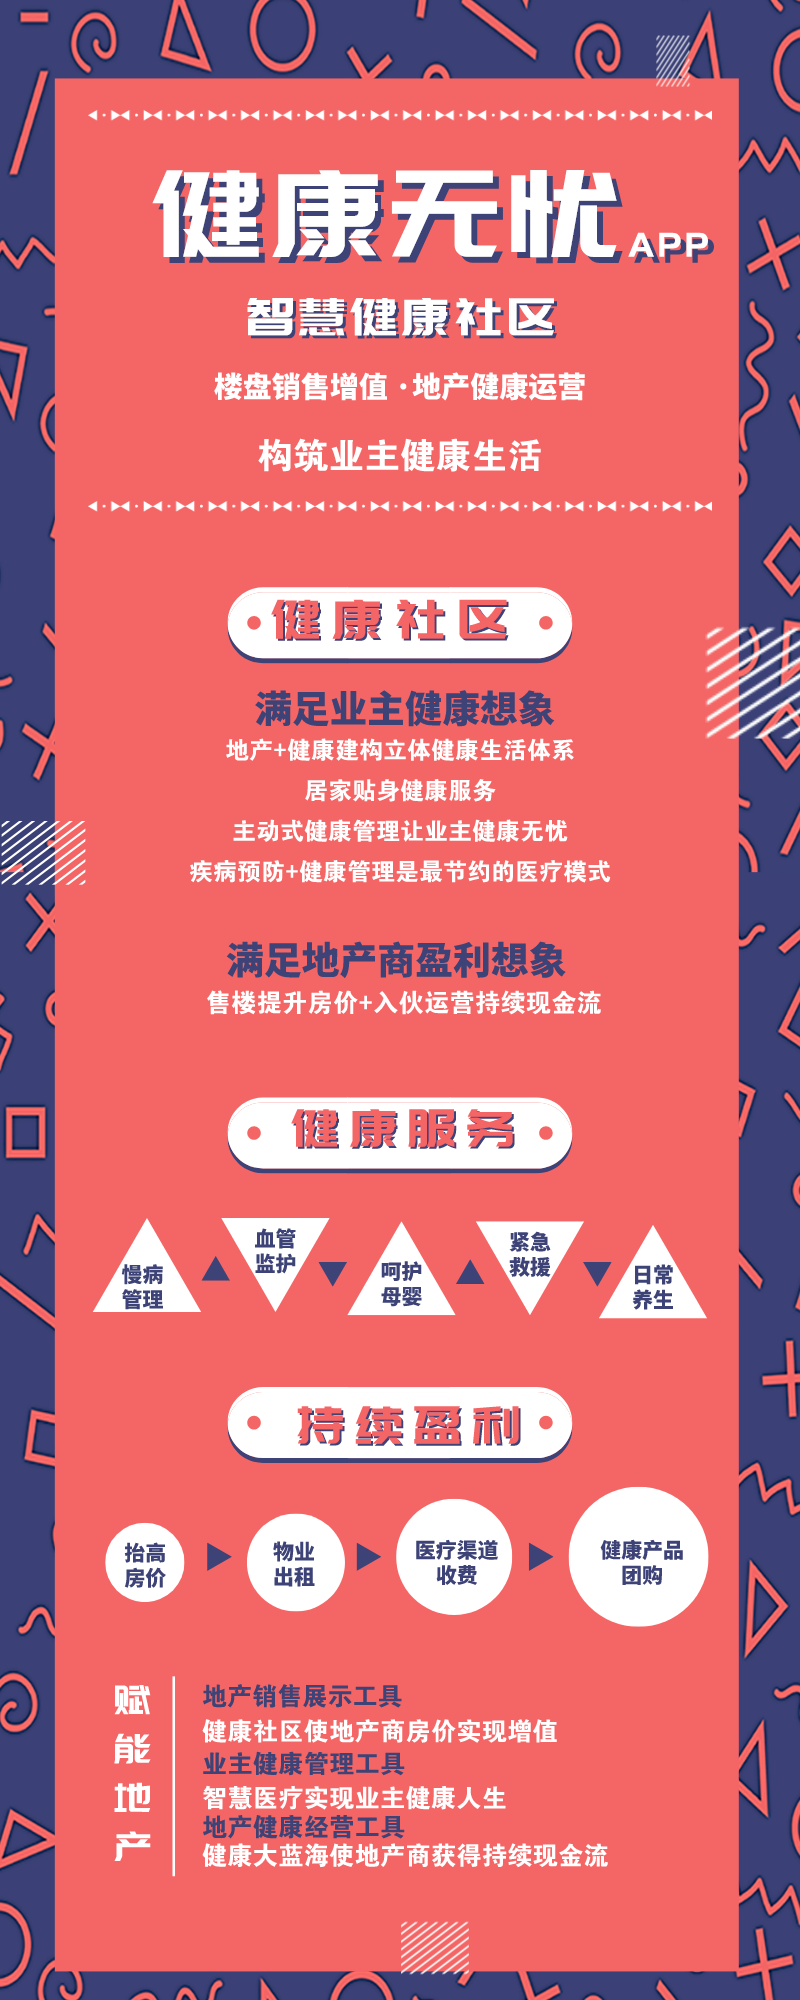 健康无忧APP_长图海报_2020-12-22-0.png